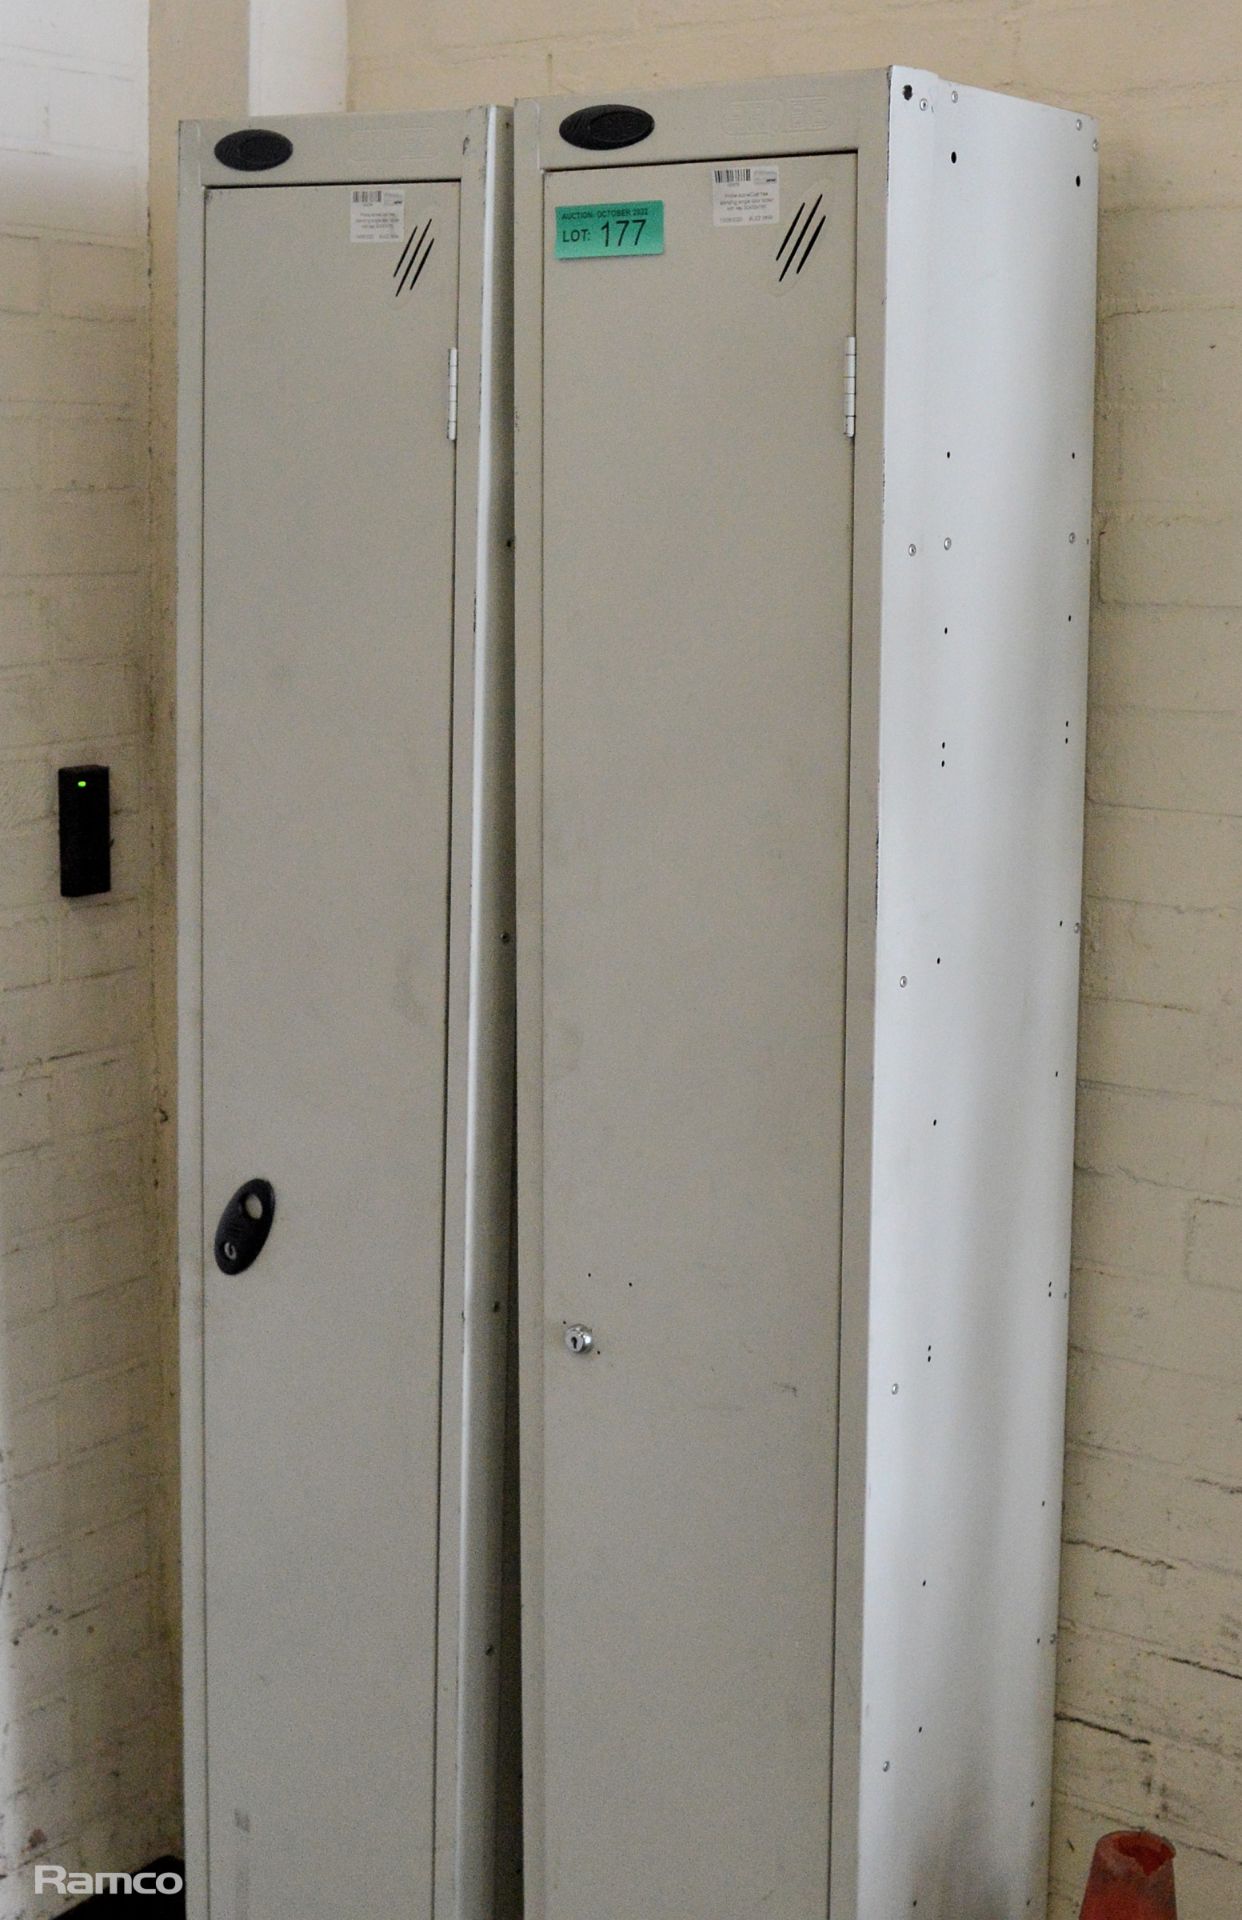 2x Probe Active Coat free standing single door locker - no keys 30x30x180 - Image 2 of 4